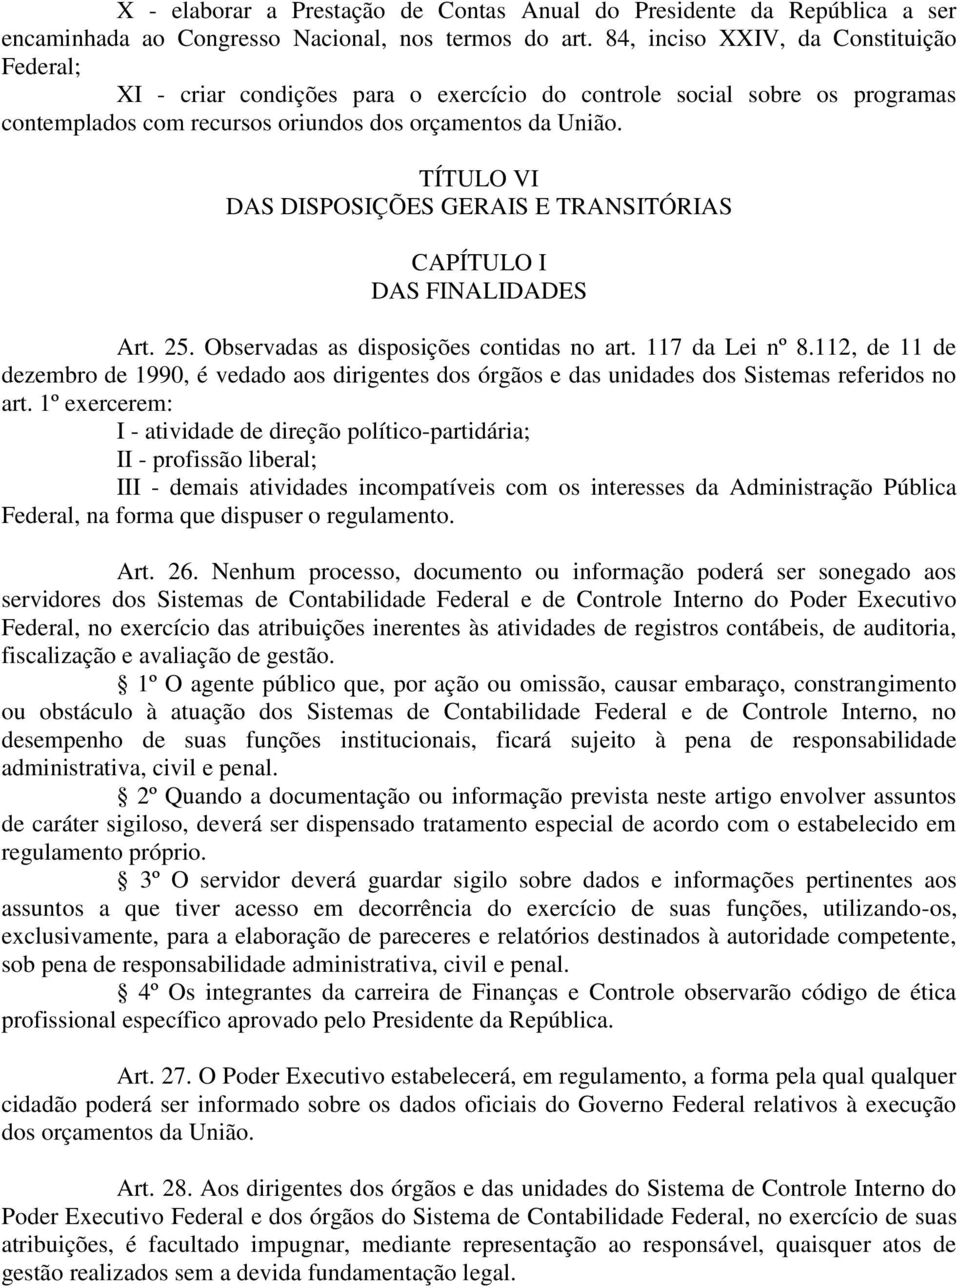 TÍTULO VI DAS DISPOSIÇÕES GERAIS E TRANSITÓRIAS CAPÍTULO I DAS FINALIDADES Art. 25. Observadas as disposições contidas no art. 117 da Lei nº 8.